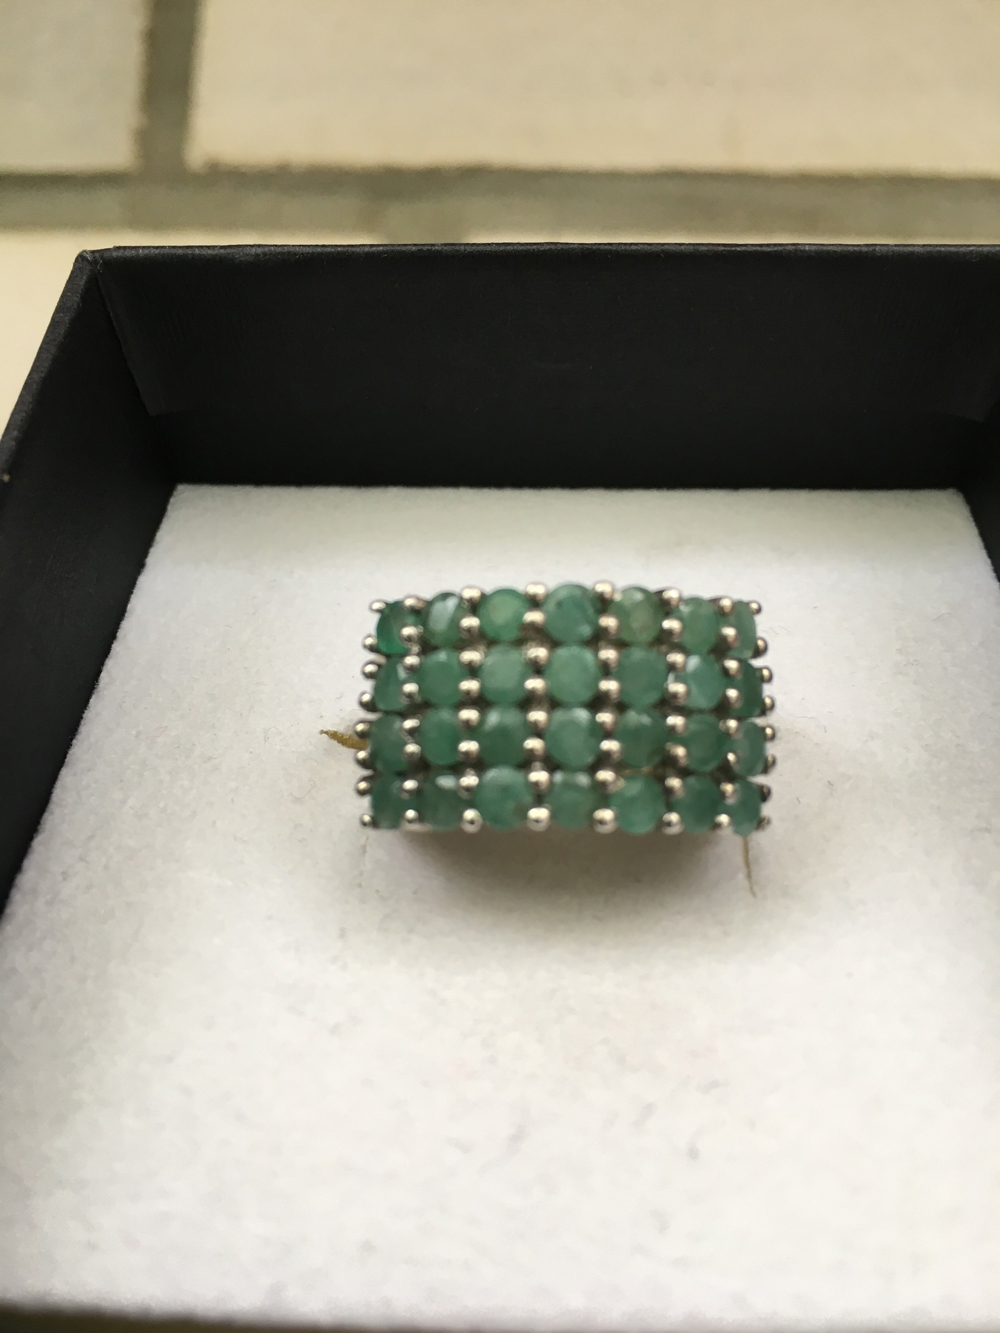 NEU! Wunderschöner Smaragd Ring (Sambia), Gr.18